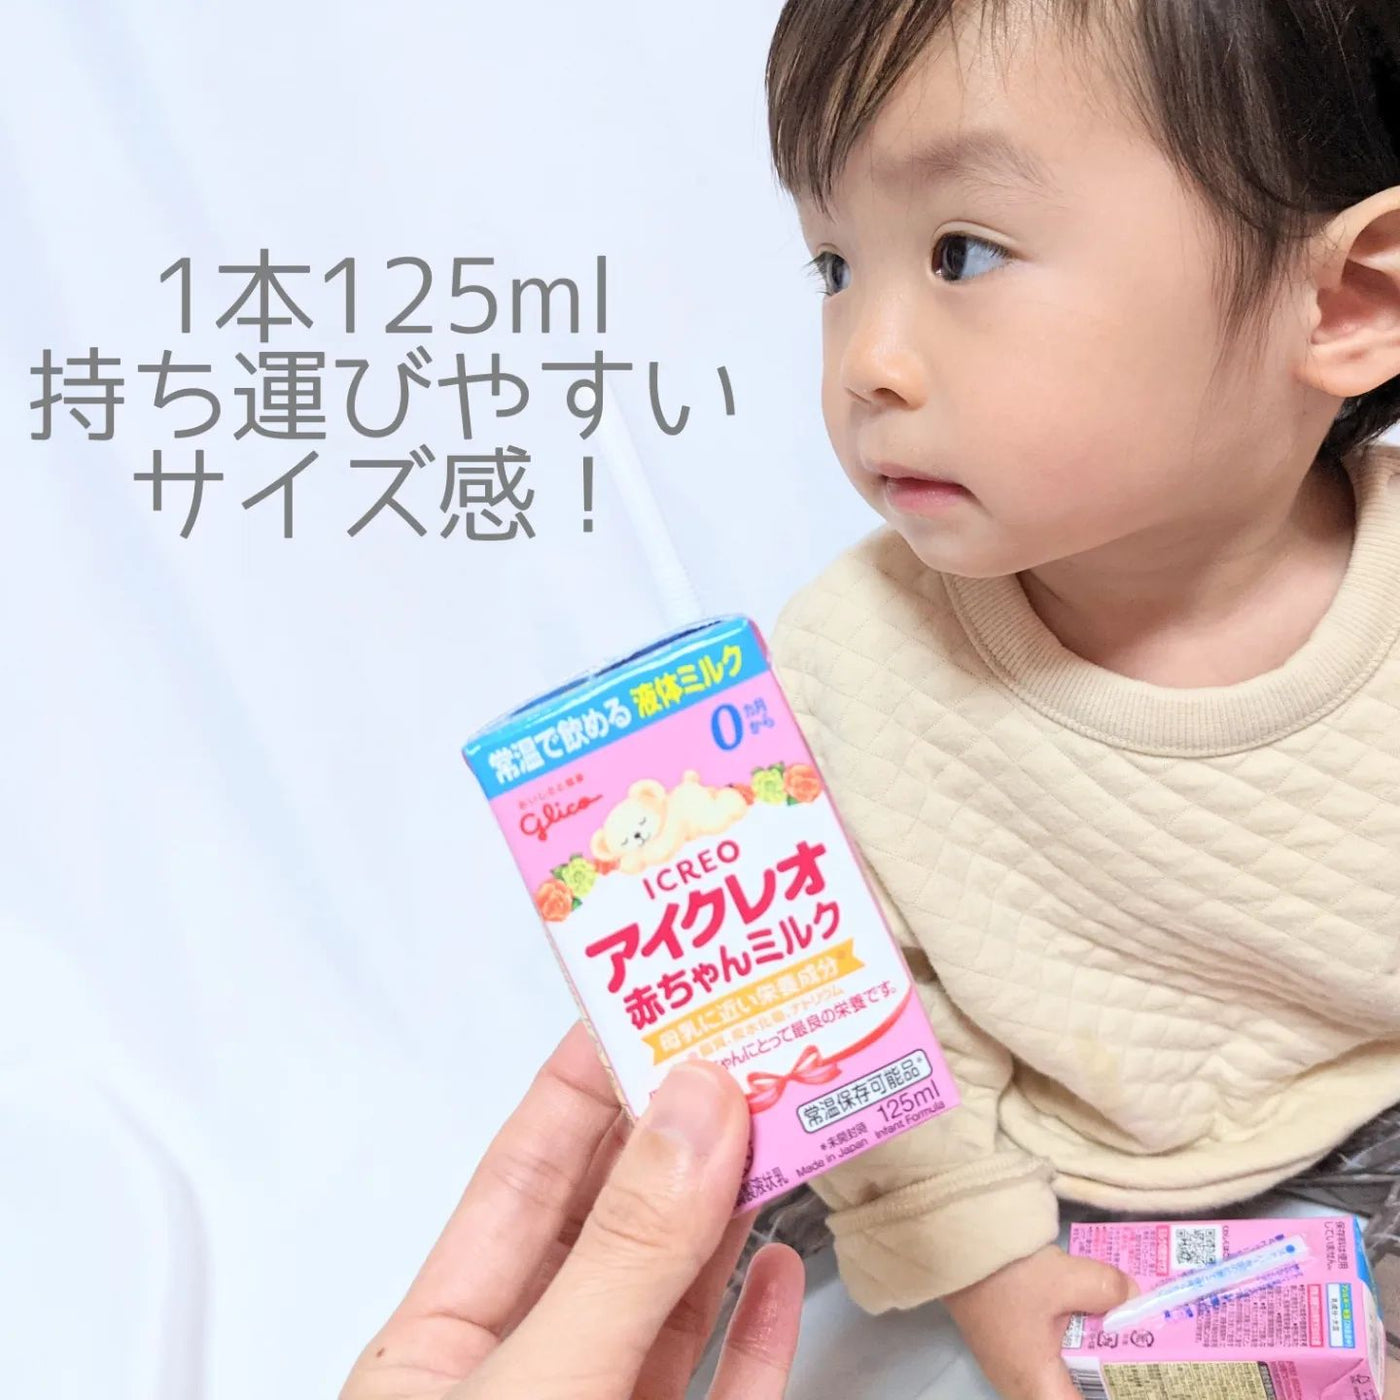 【お試し】バランスミルク800g 赤ちゃんミルク18本セット